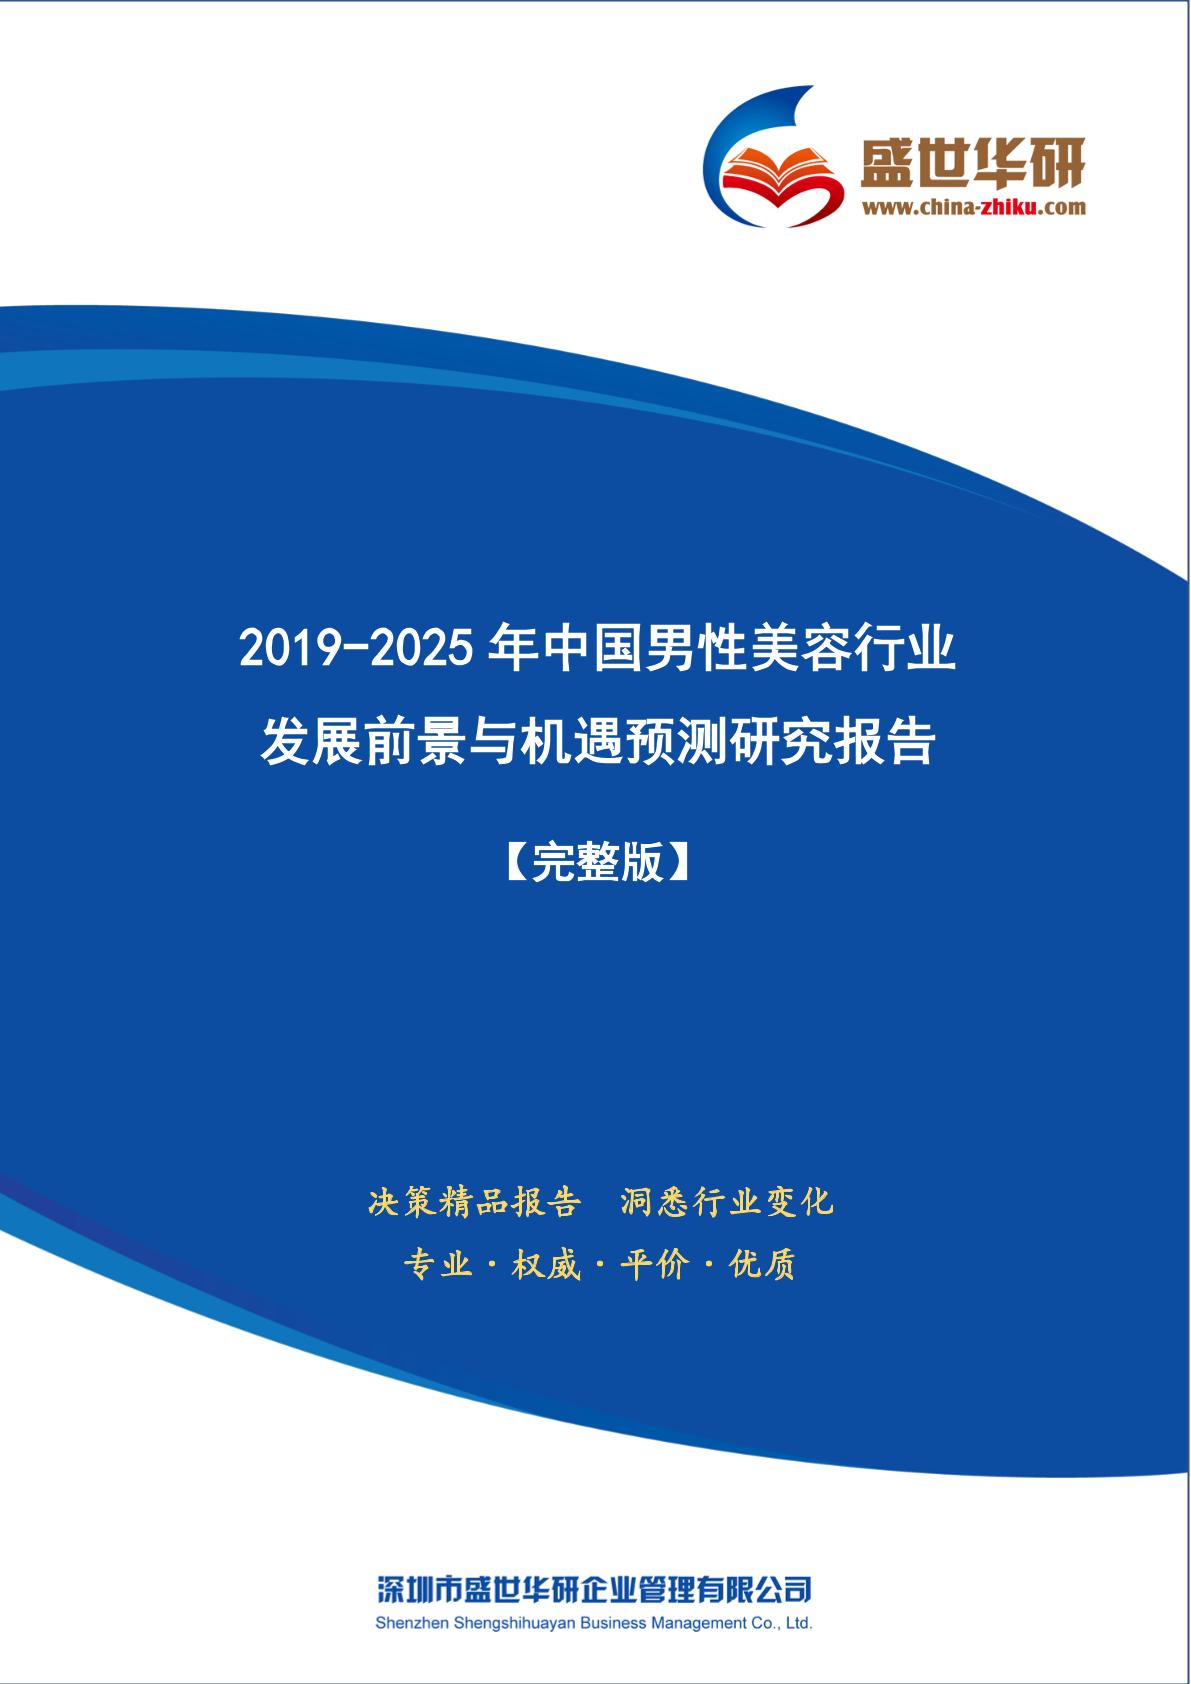 【完整版】2019-2025年中国男性美容行业发展前景与机遇预测研究报告